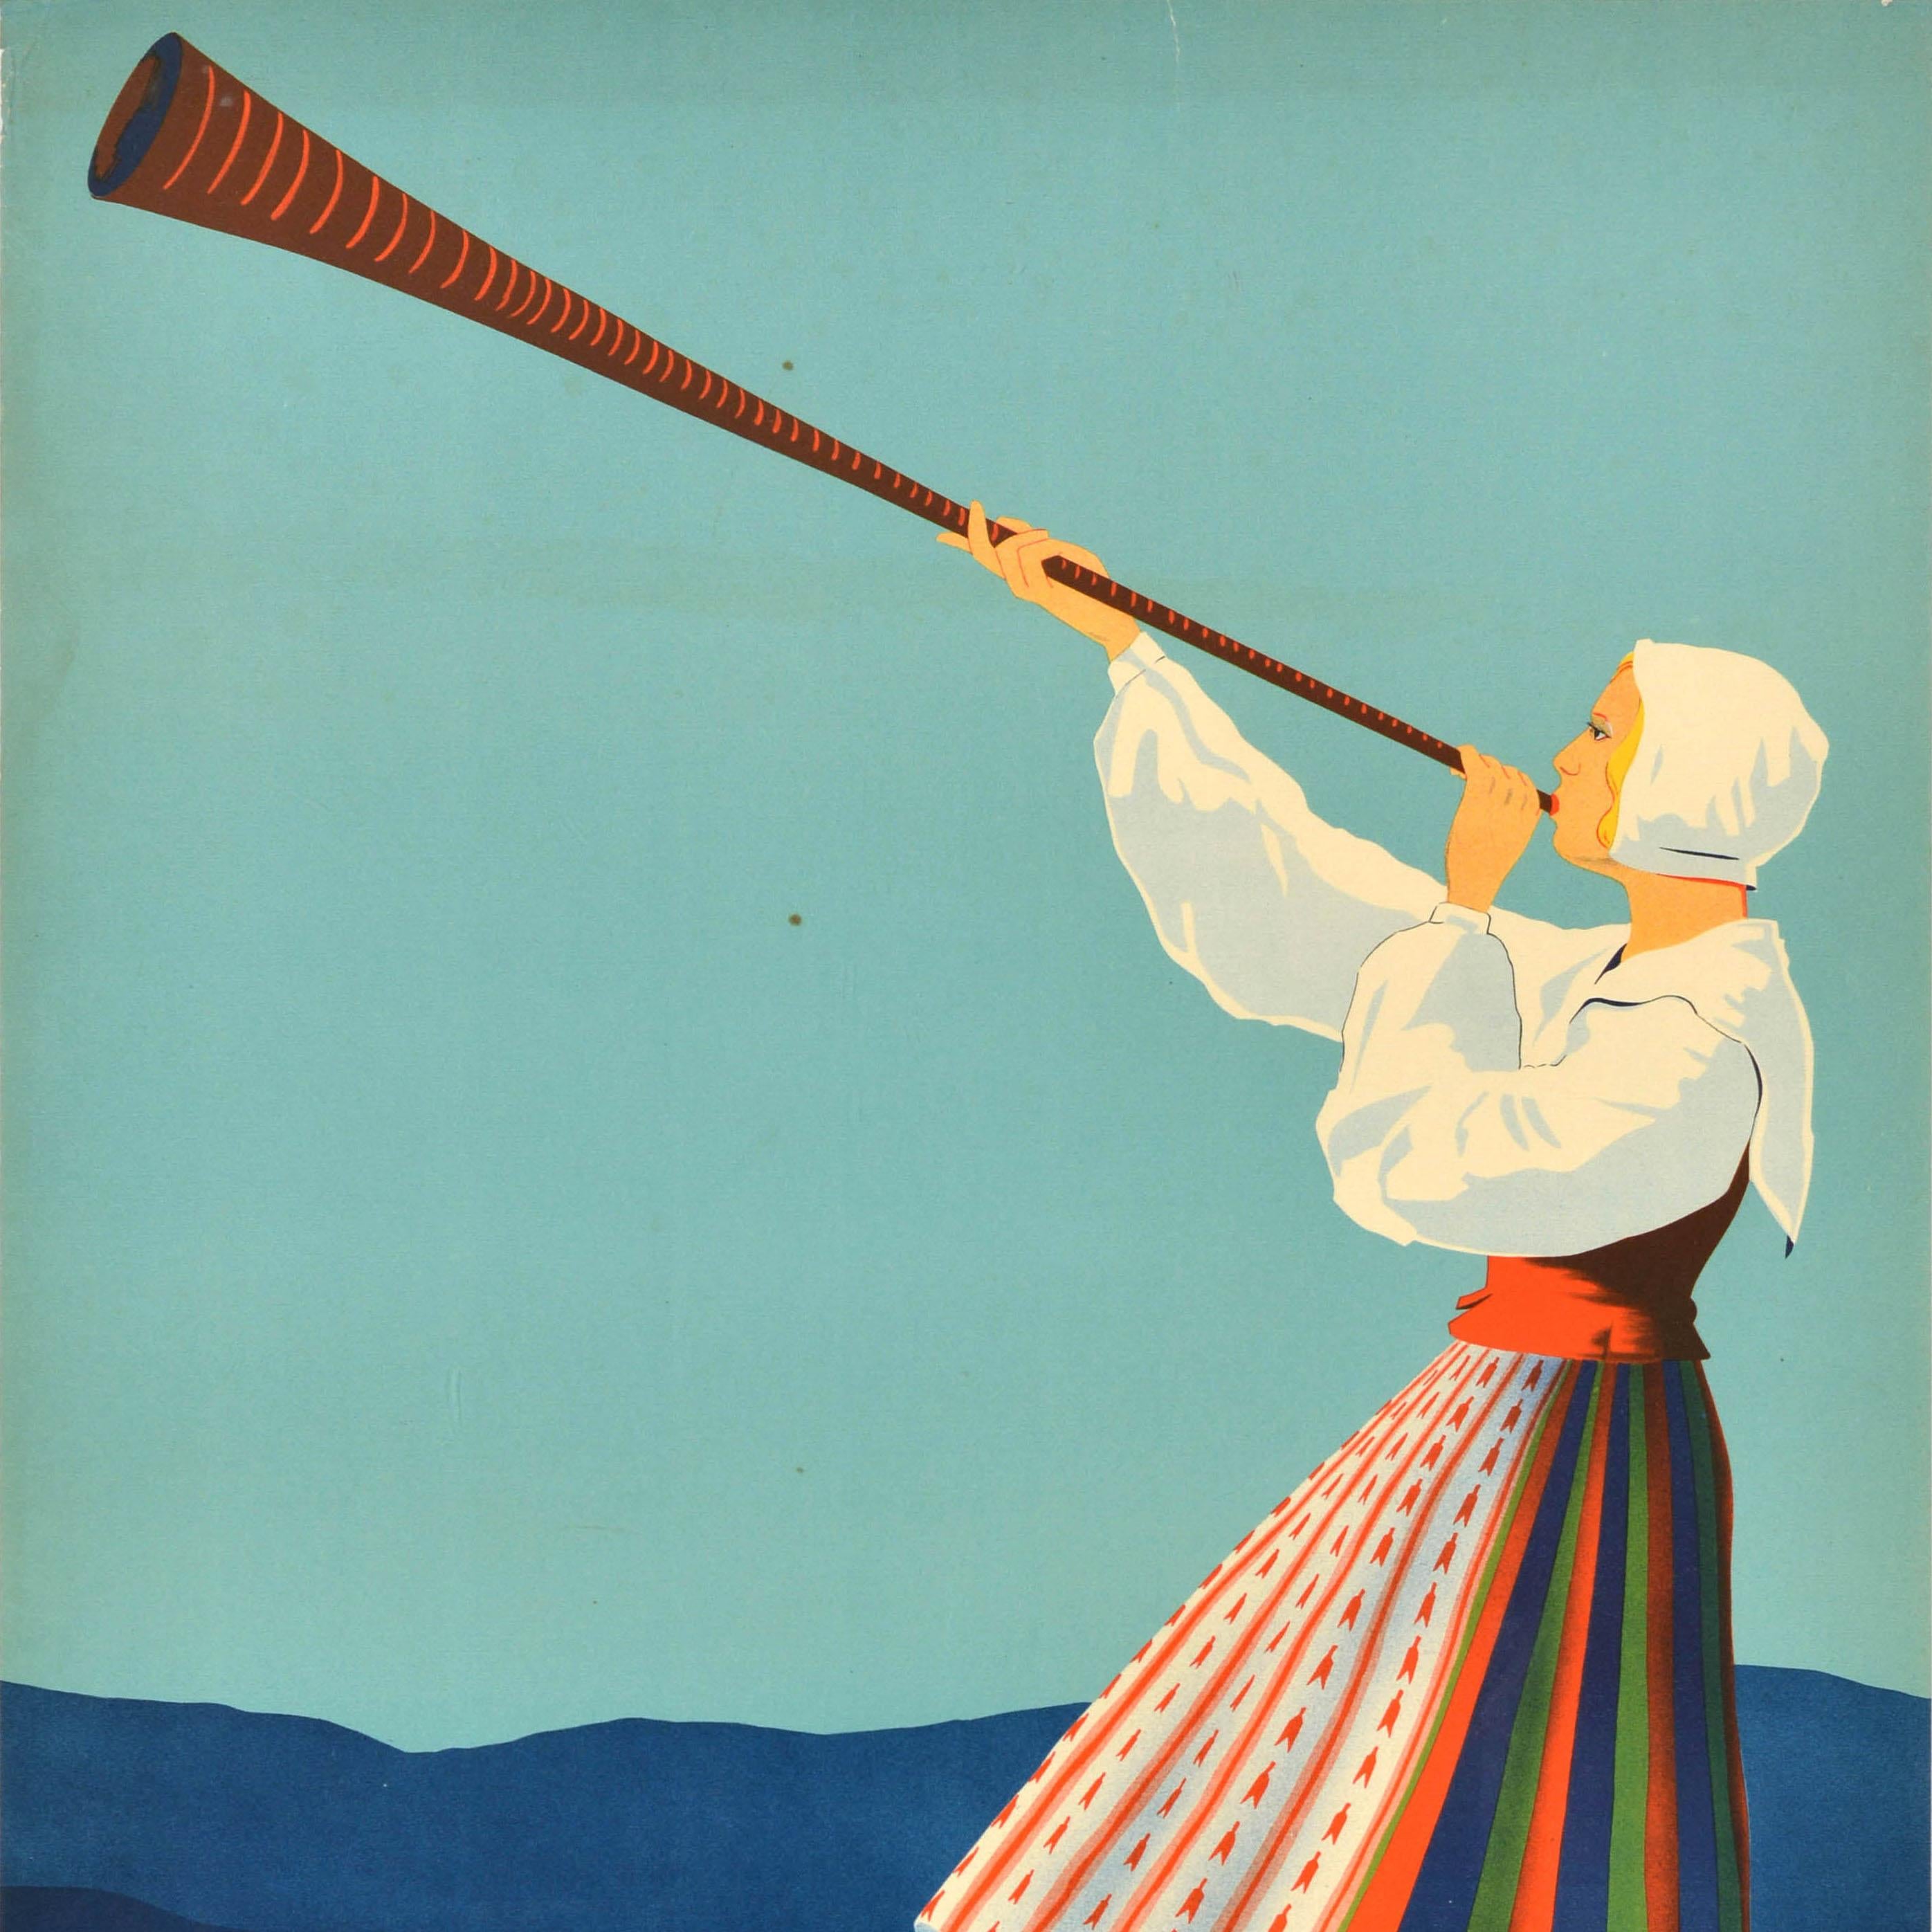 Swedish Original Vintage Travel Advertising Poster Varmland Promised Land Sweden Sverige For Sale